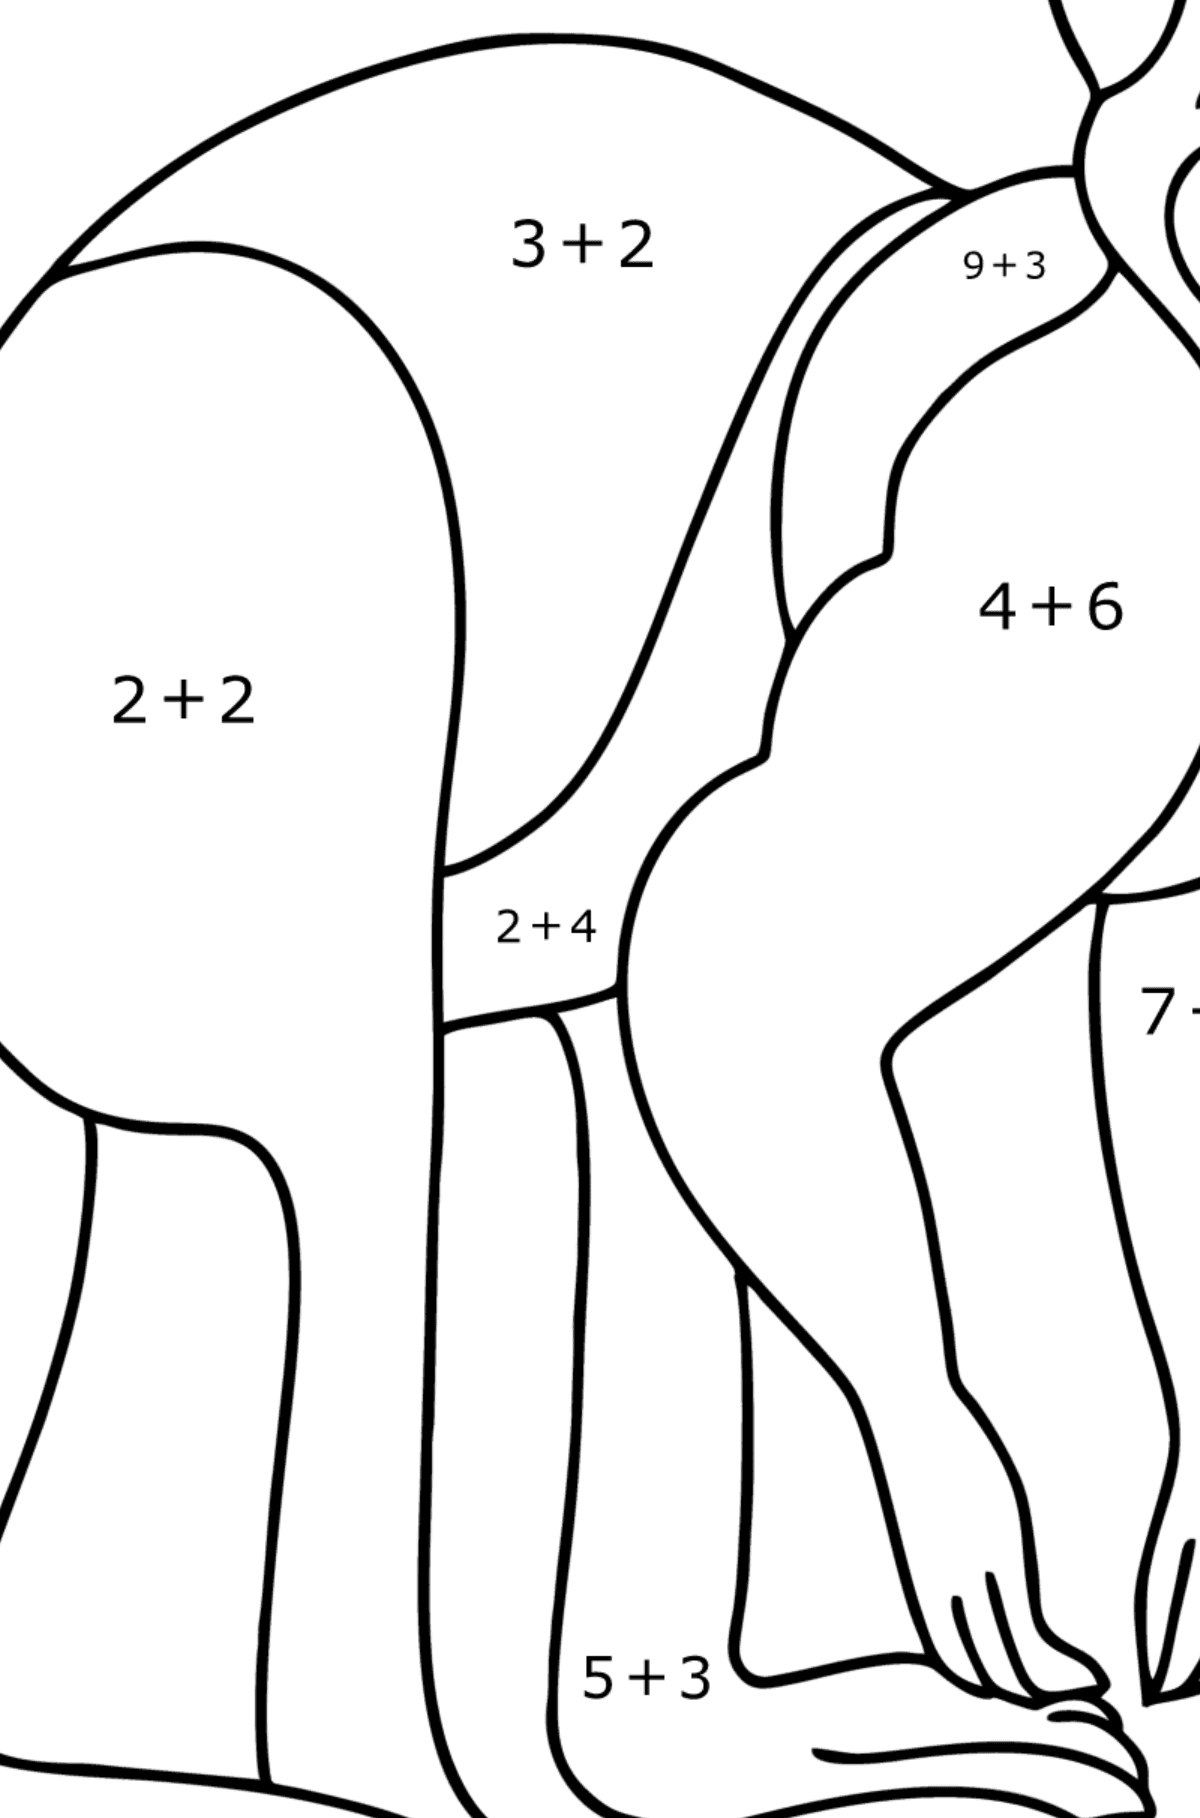 Omalovánka klokan zázvorový - Matematická Omalovánka - Sčítání pro děti